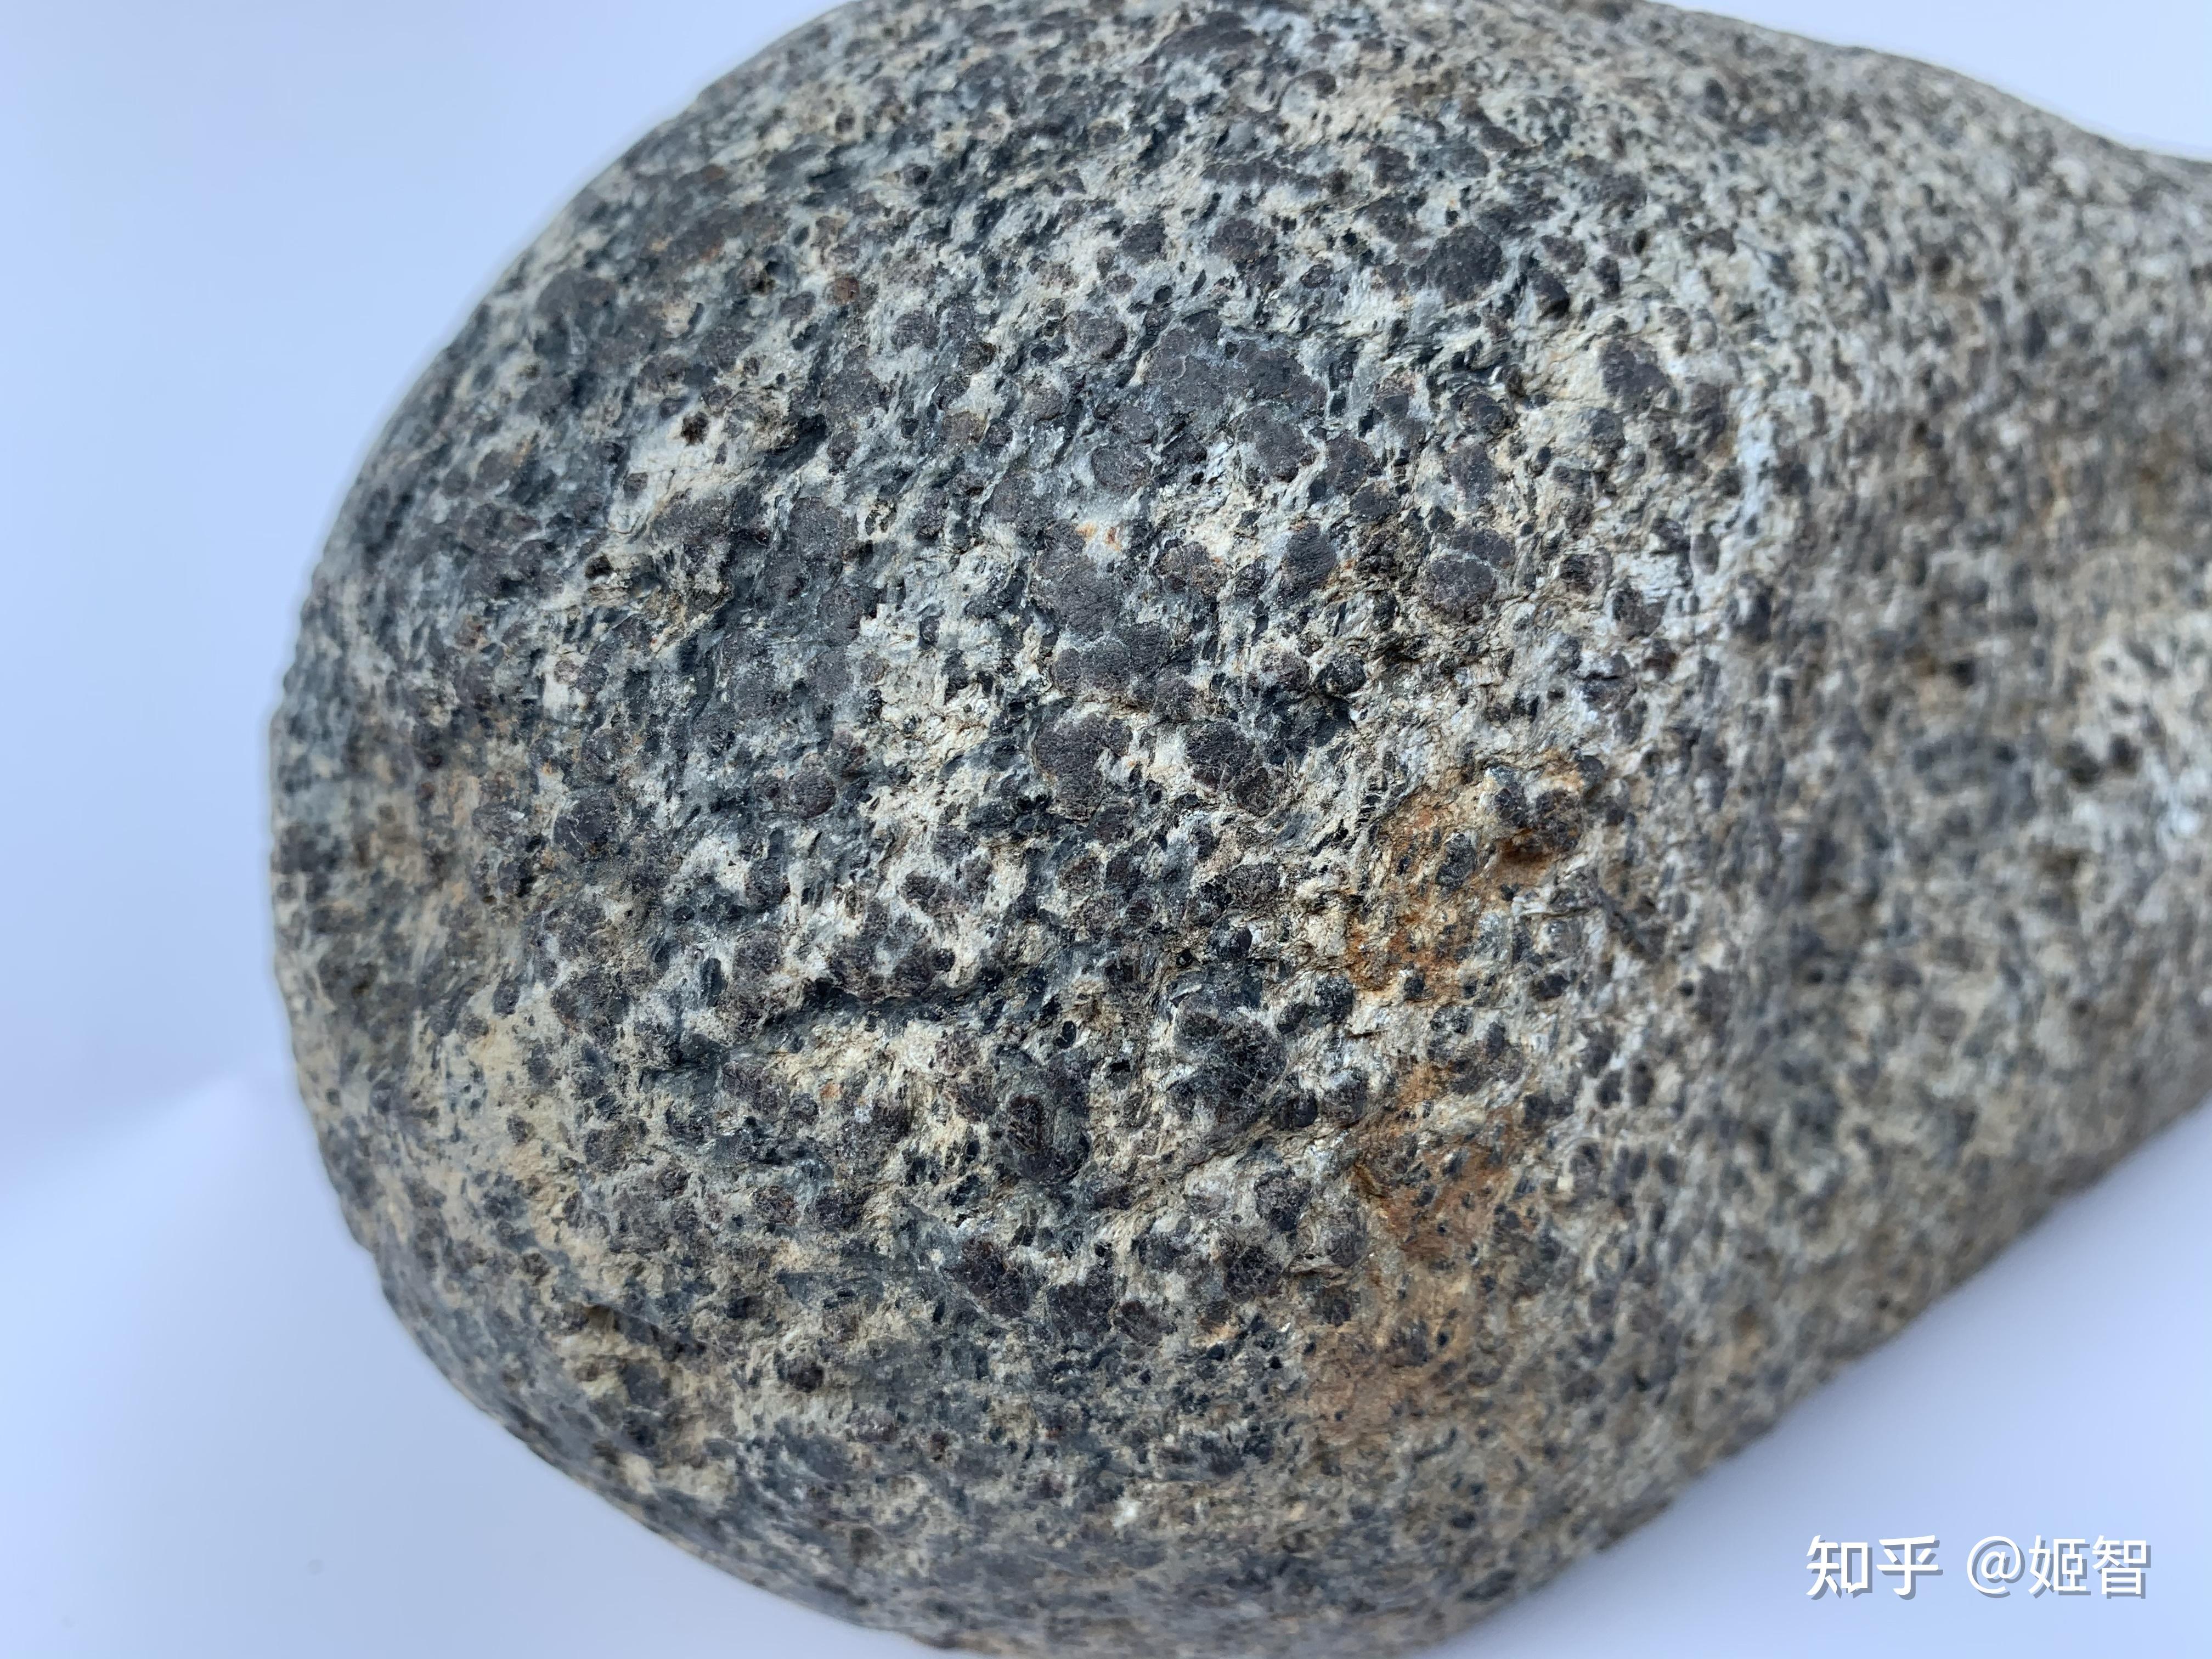 宁夏陨石收藏研究会这颗高度定向斜方辉岩火星陨石(下图)为粗粒咽石